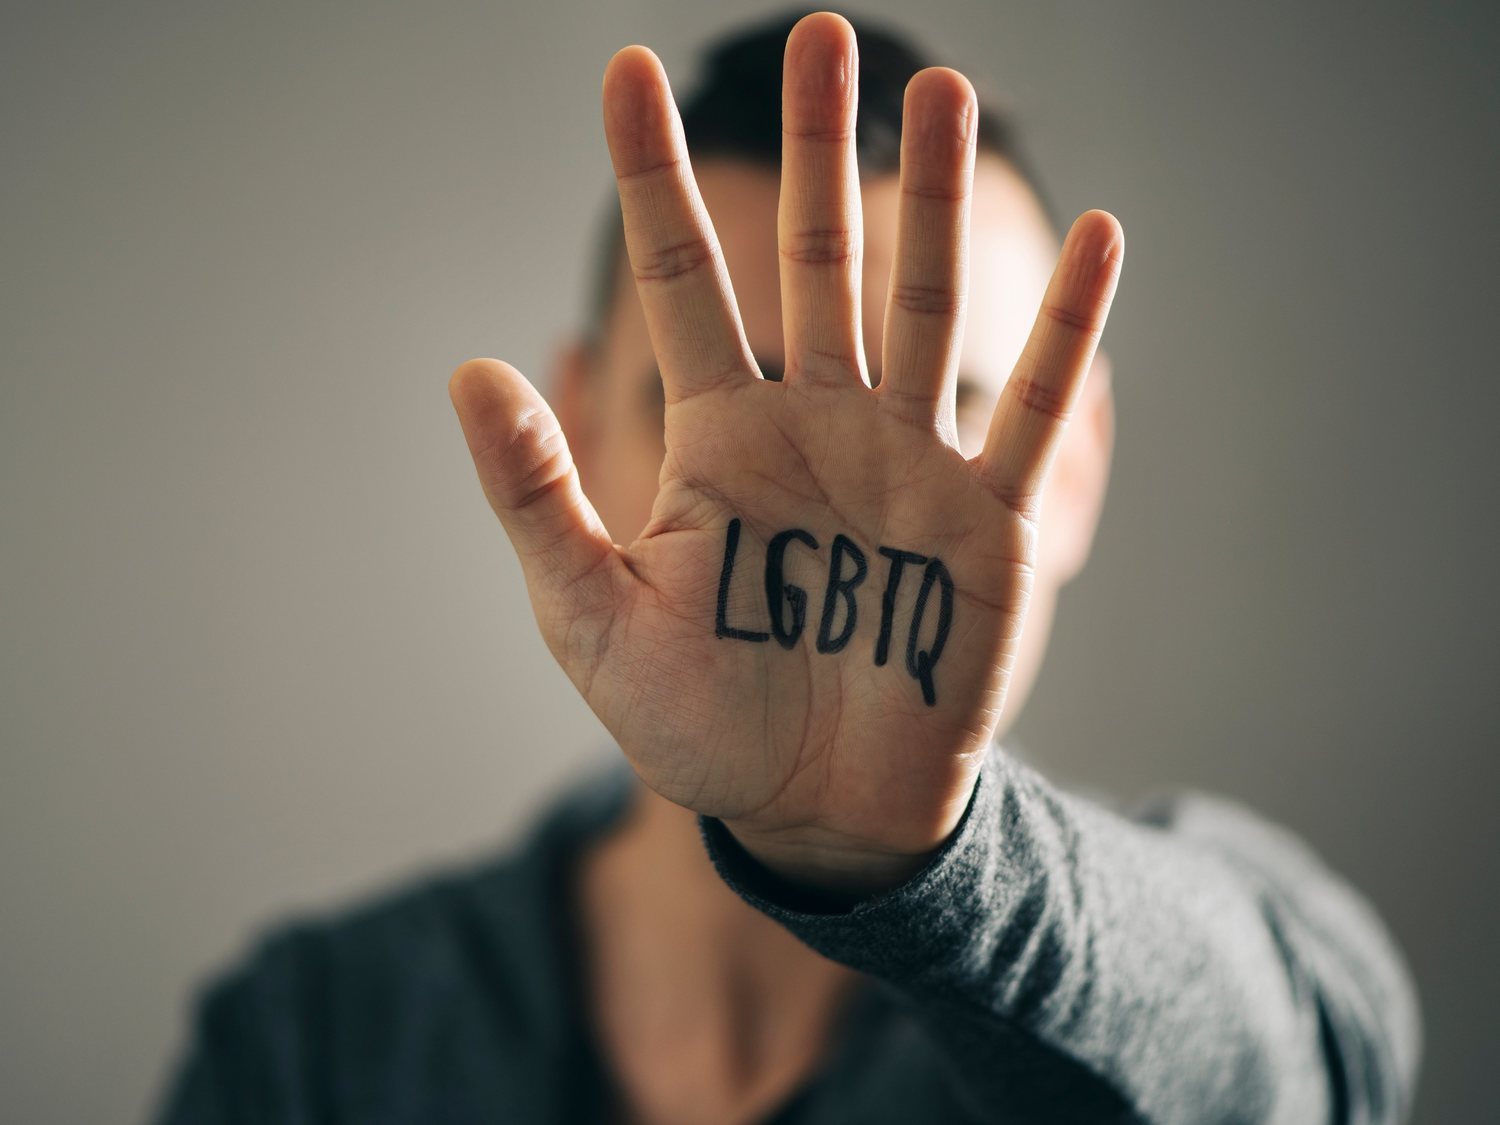 Homofobia en pleno Orgullo LGTBI: "Te voy hacer heterosexual a hostias"